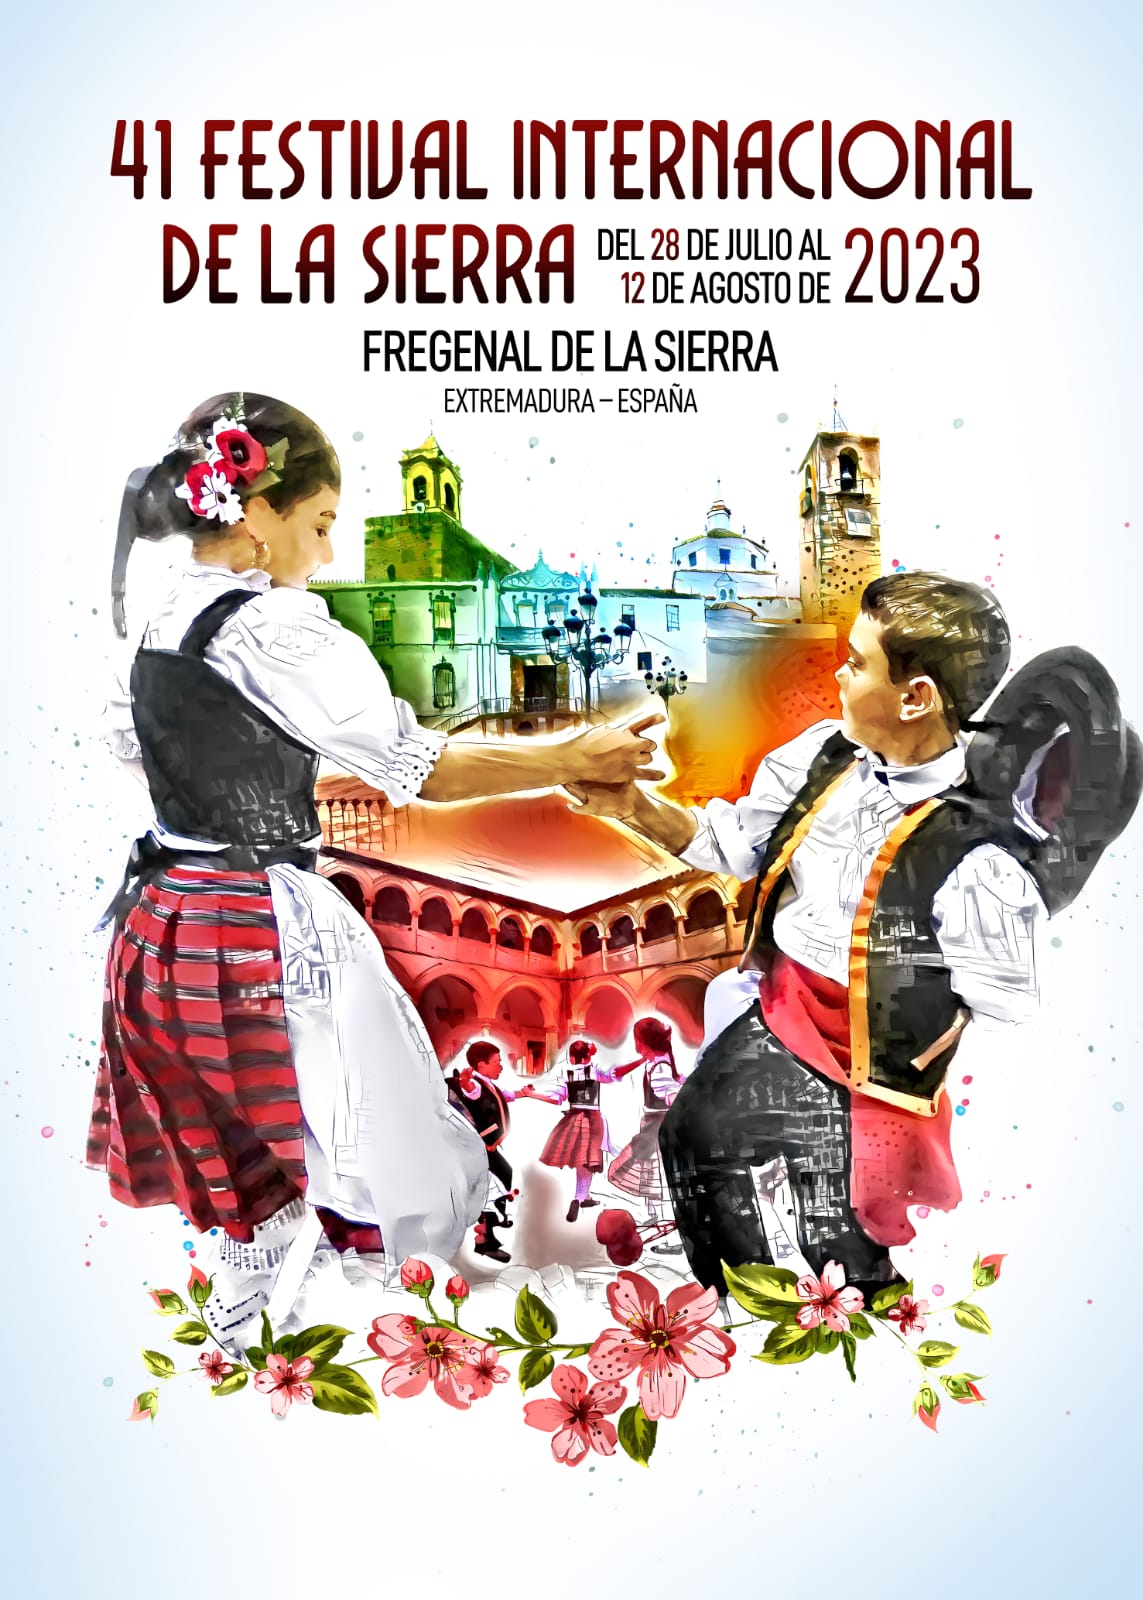 41 Festival Internacional de la Sierra.